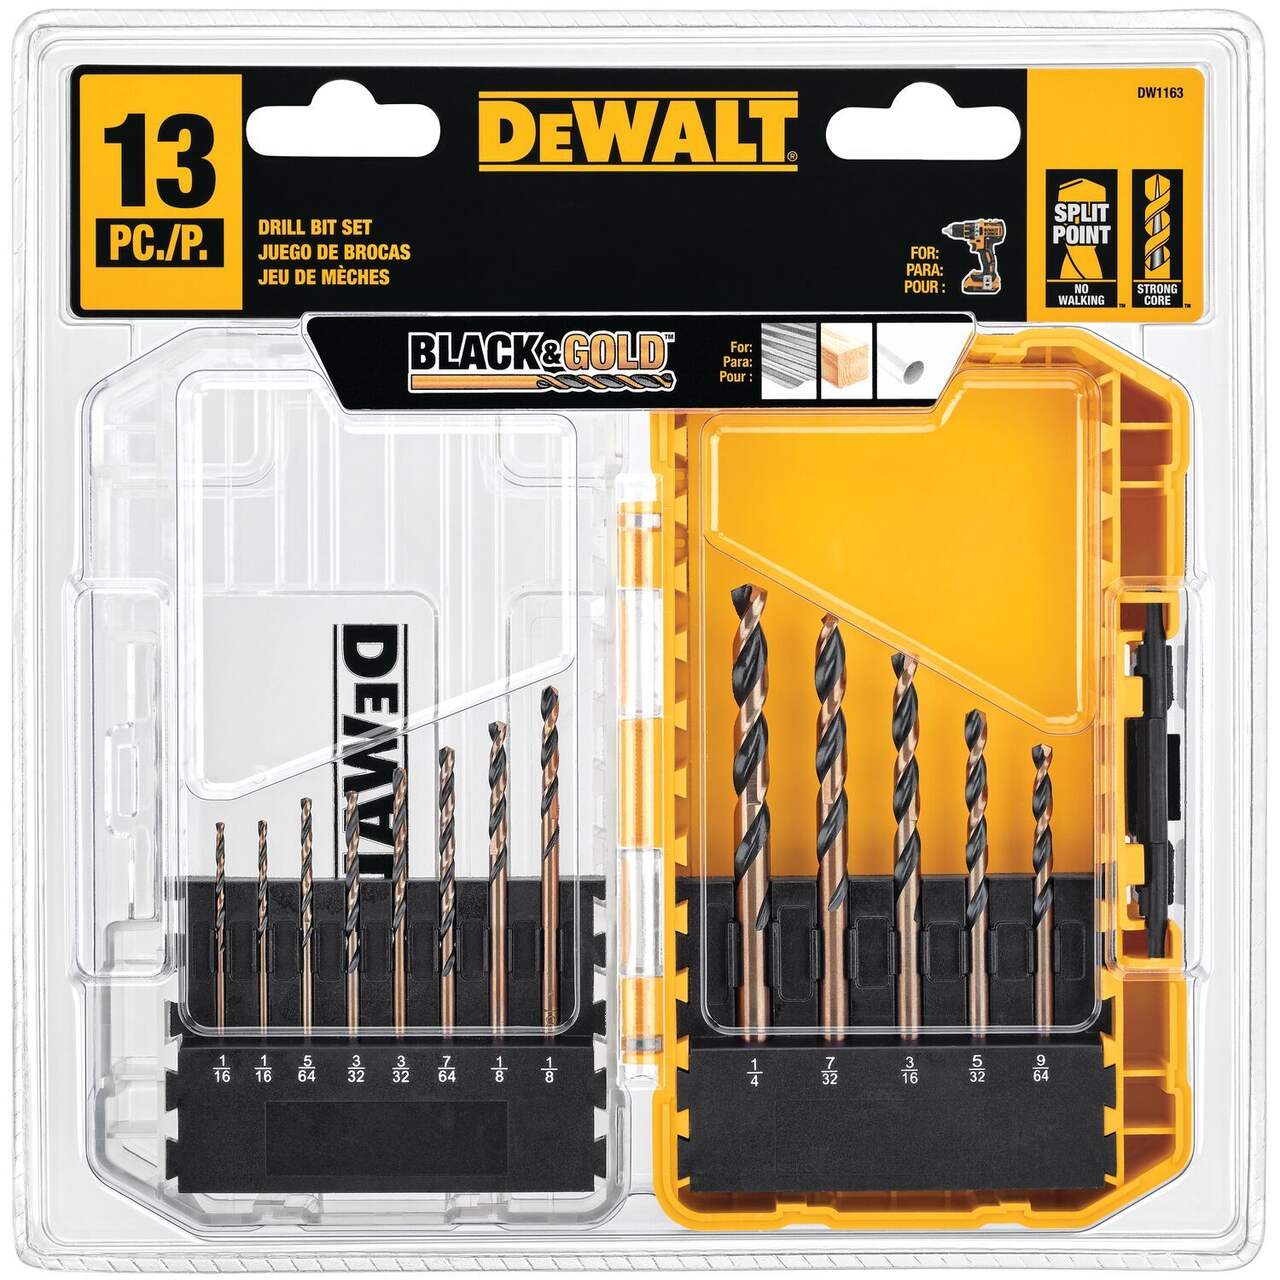 DEWALT DW1163 Black Oxide Drill Bit Set for Wood, Metal, Plastic, 13-pc